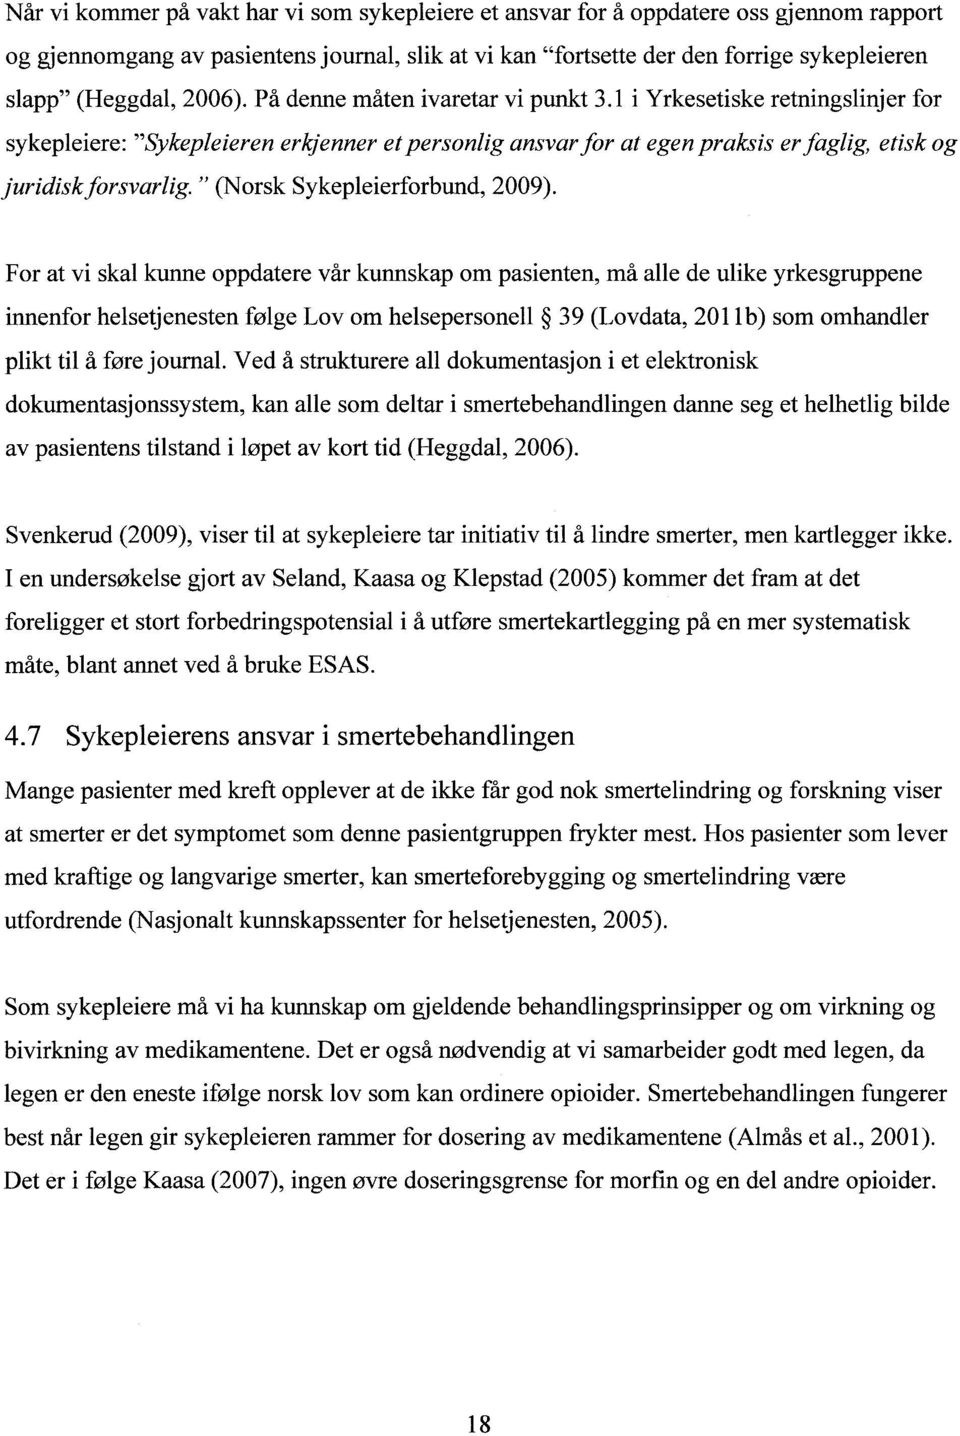 1 i Yrkesetiske retningslinjer for sykepleiere: "Sykepleieren erkjenner et personlig ansvar for at egen praksis er faglig, etisk og juridiskforsvarlig. " (Norsk Sykepleierforbund, 2009).